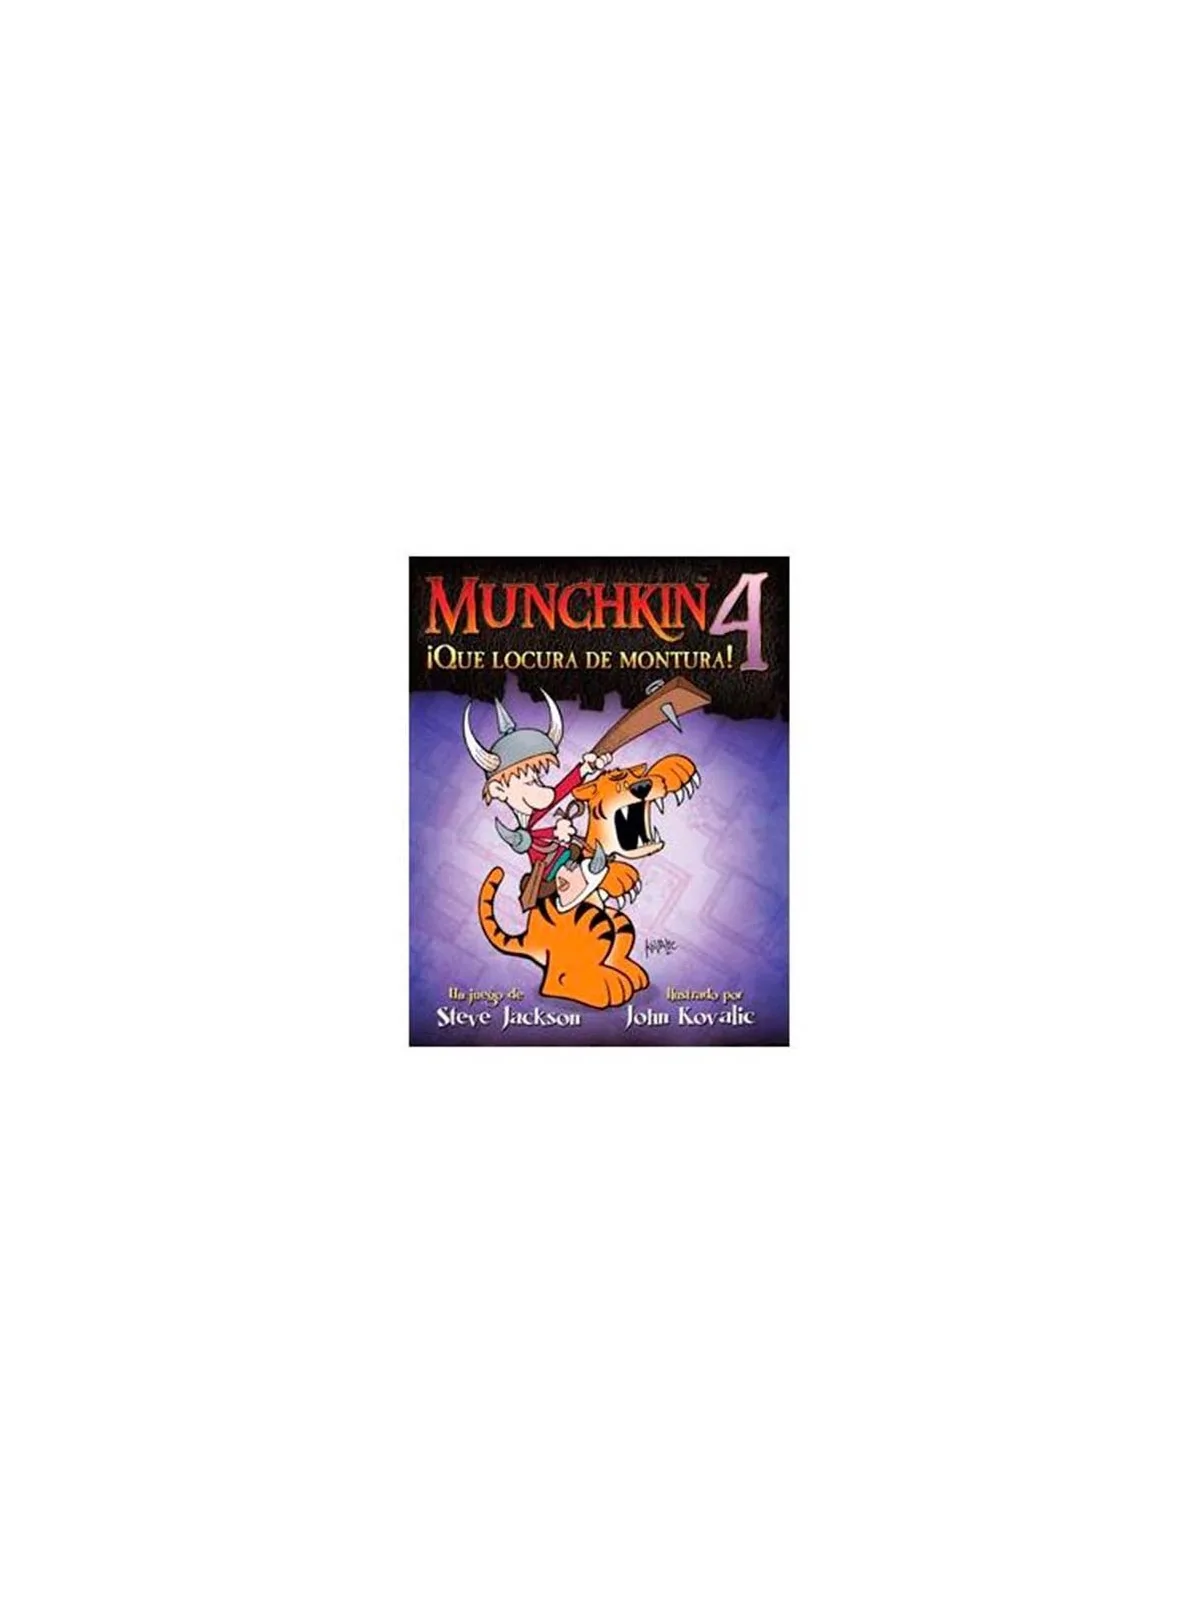 Comprar Munchkin 4: ¡Que Locura de Montura! barato al mejor precio 14,